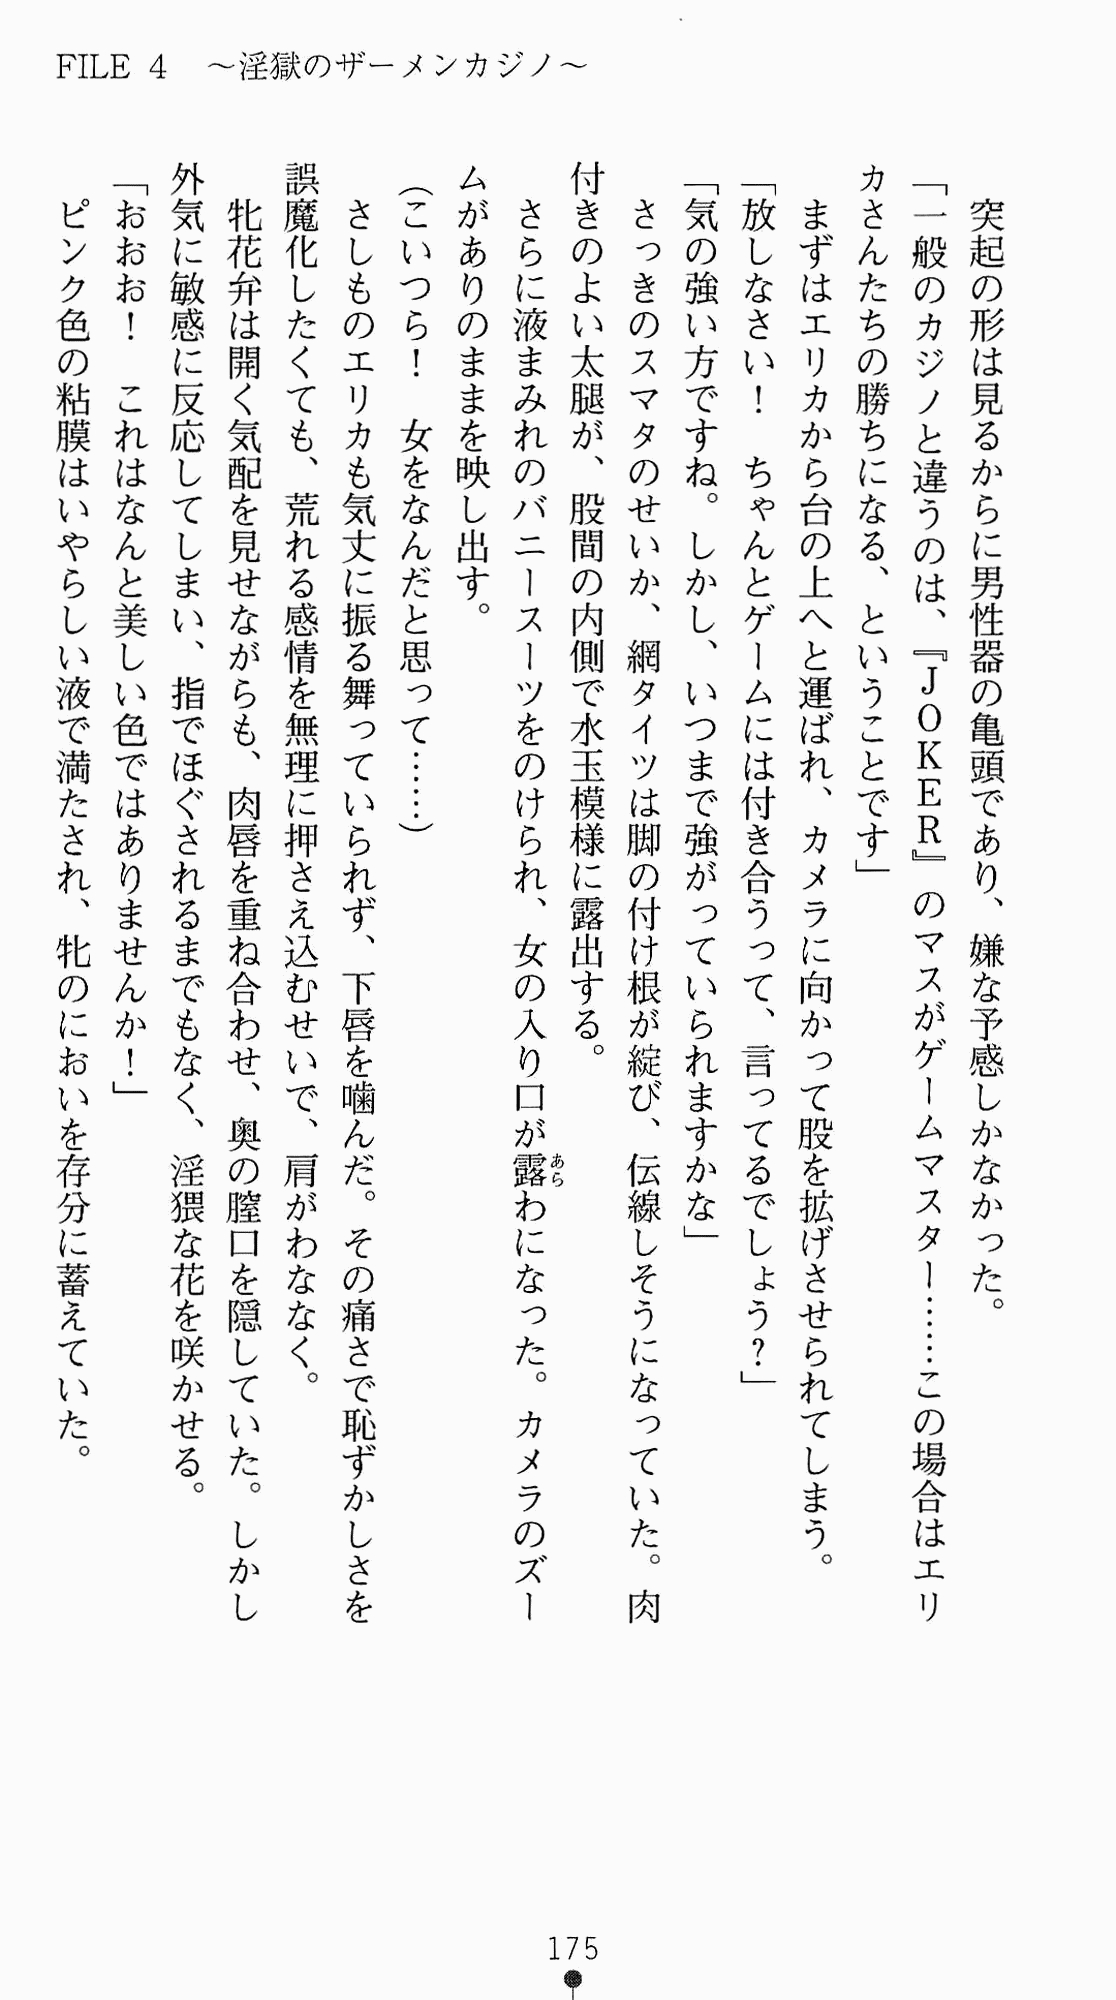 [Kagura Youko, Takahama Tarou] Shiritsu Tantei Takasuga Erika no Jikenbo 2 - Chijouha AV Satsuei 24-ji 190